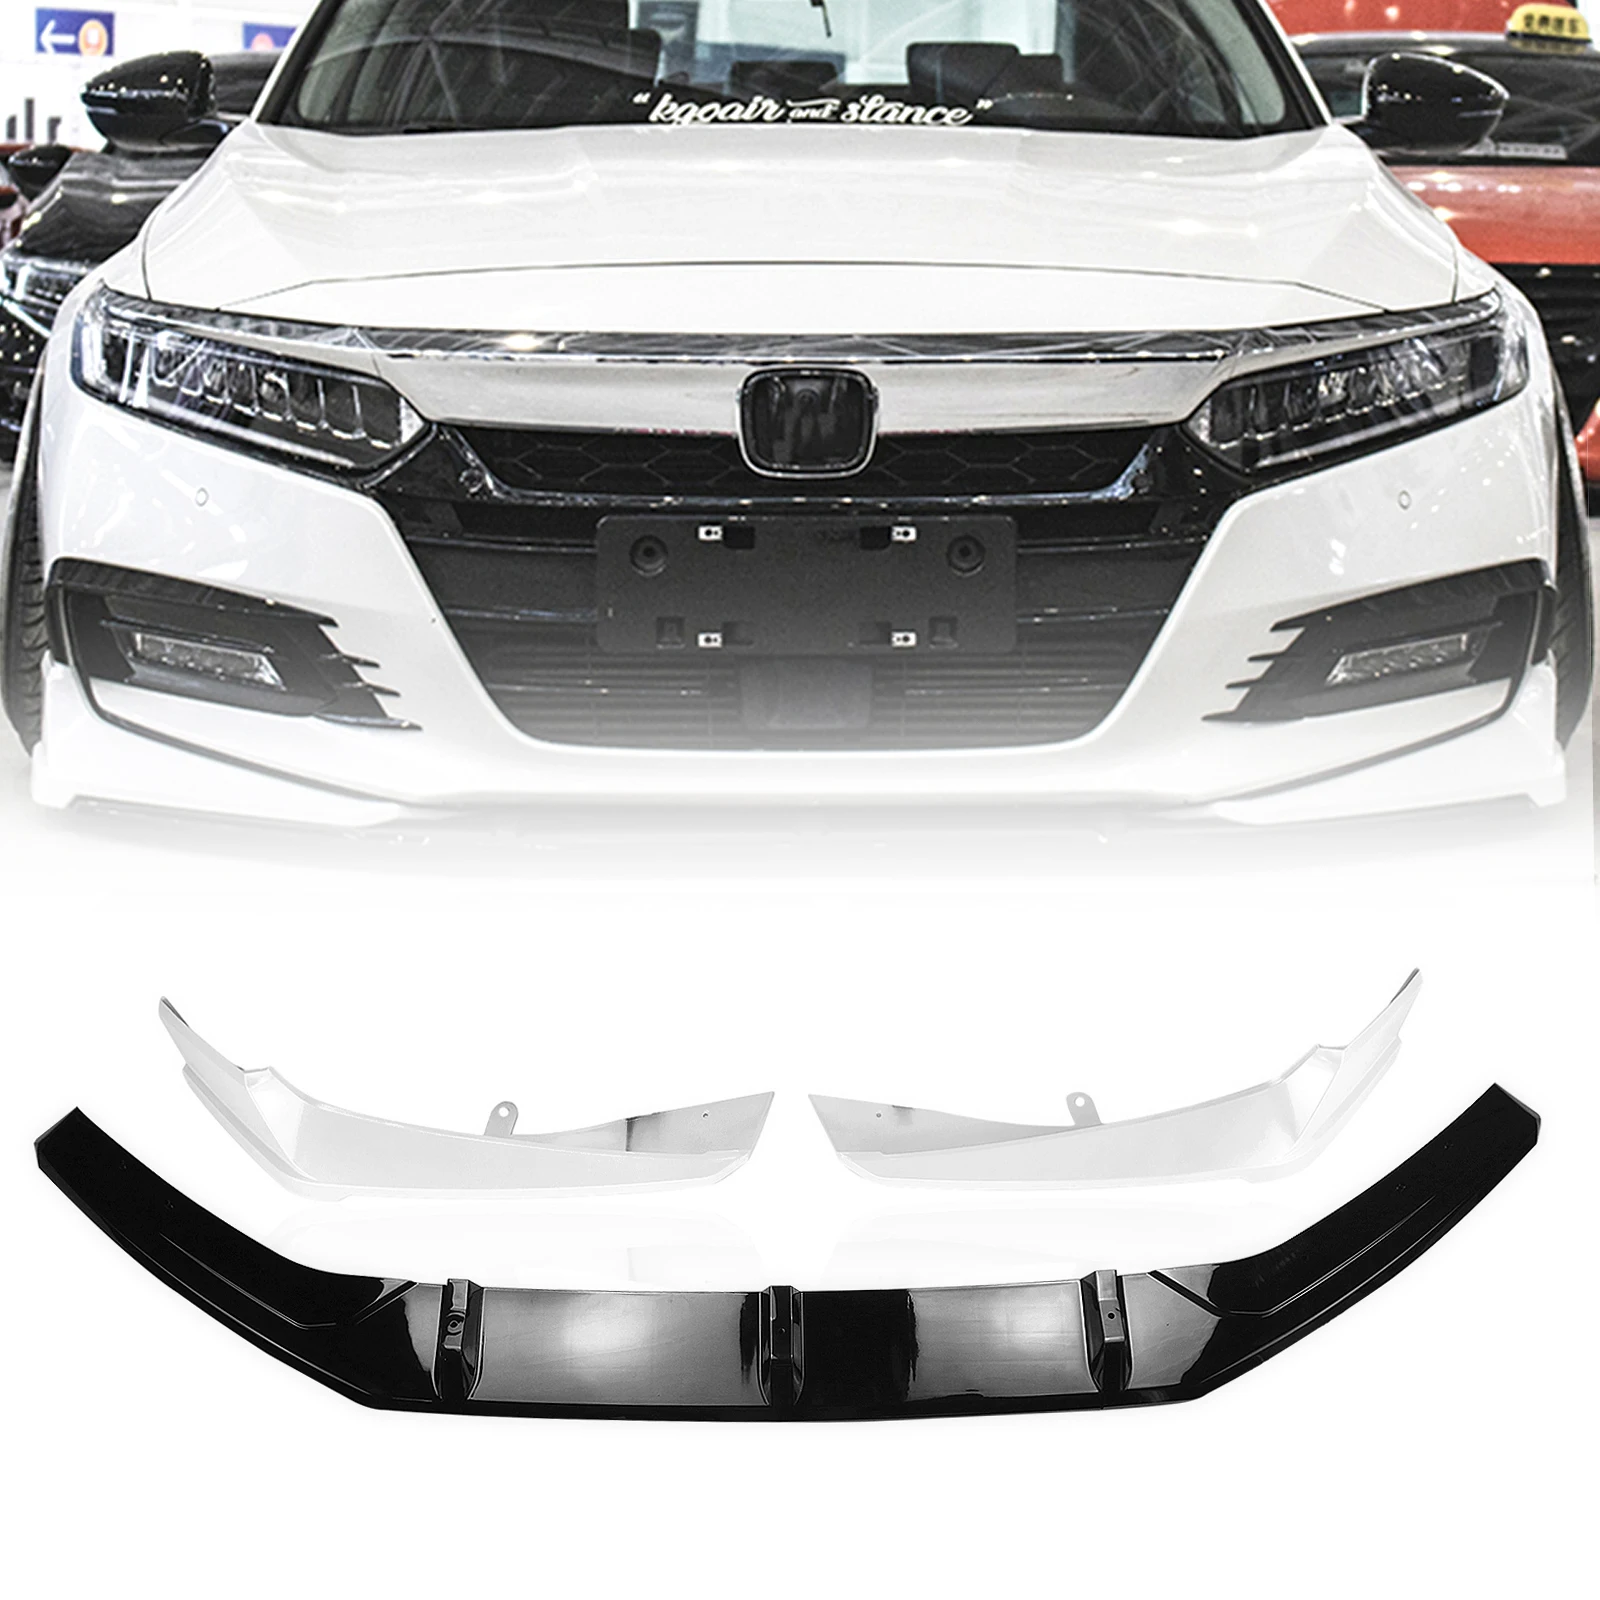 

AKASAKA передний бампер спойлер губа для Honda Accord 2018 2019 10th нижний белый боковой угловой разделитель Крышка вентиляционного отверстия молдинговая отделка